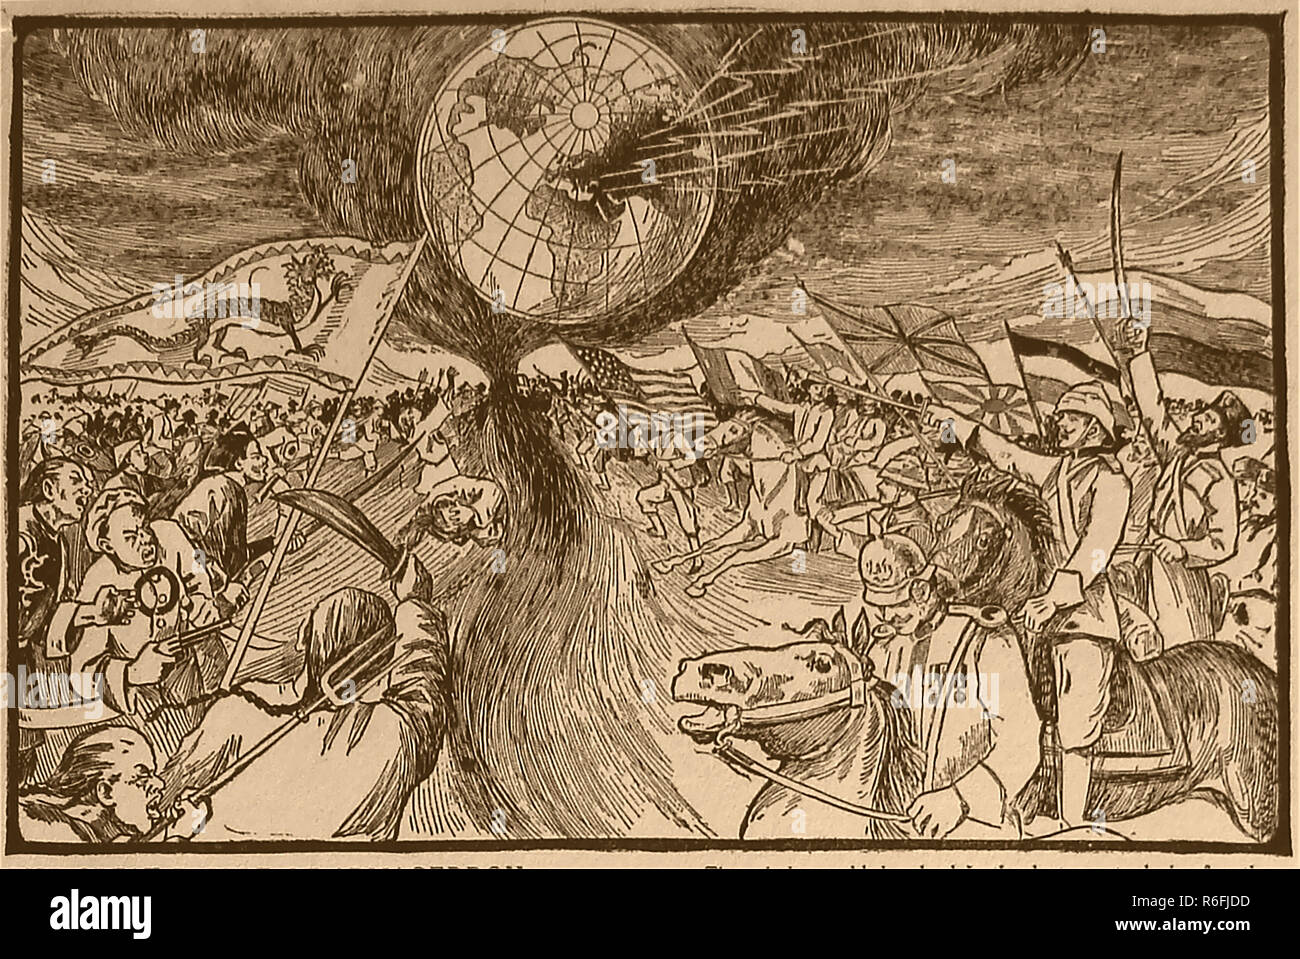 Un 1910 illustrazione che mostra una vista predittivo della grande battaglia di Armageddon con riferimento al passaggio nella Bibbia Cristiana (rivelazioni 16:16) Foto Stock